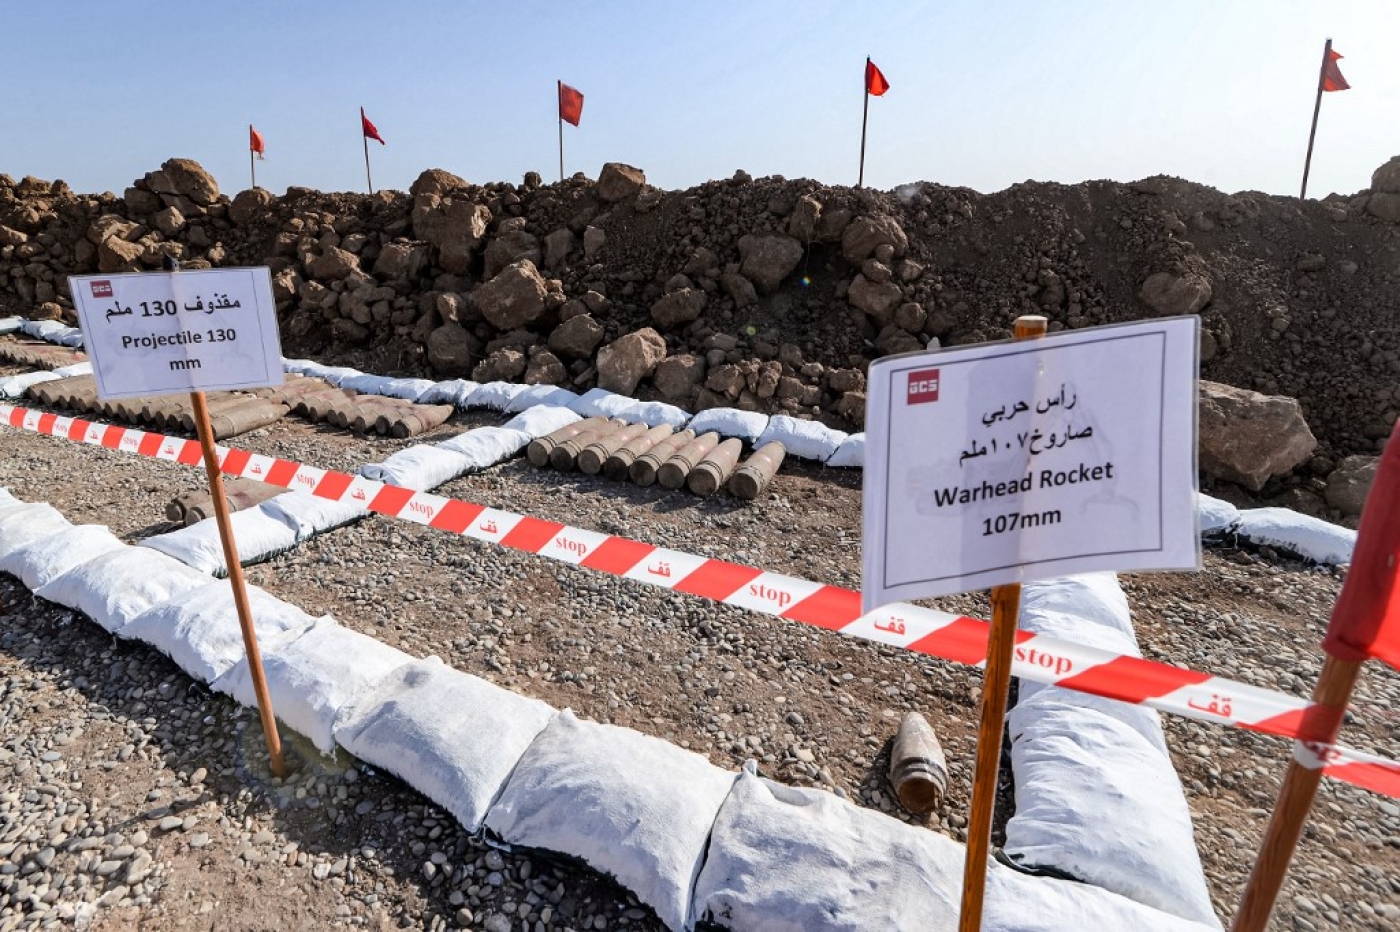 En attendant d’être désamorcées, les mines et explosifs trouvés sont déposés sur un terrain désertique (AFP/Zaid al-Obeidi)